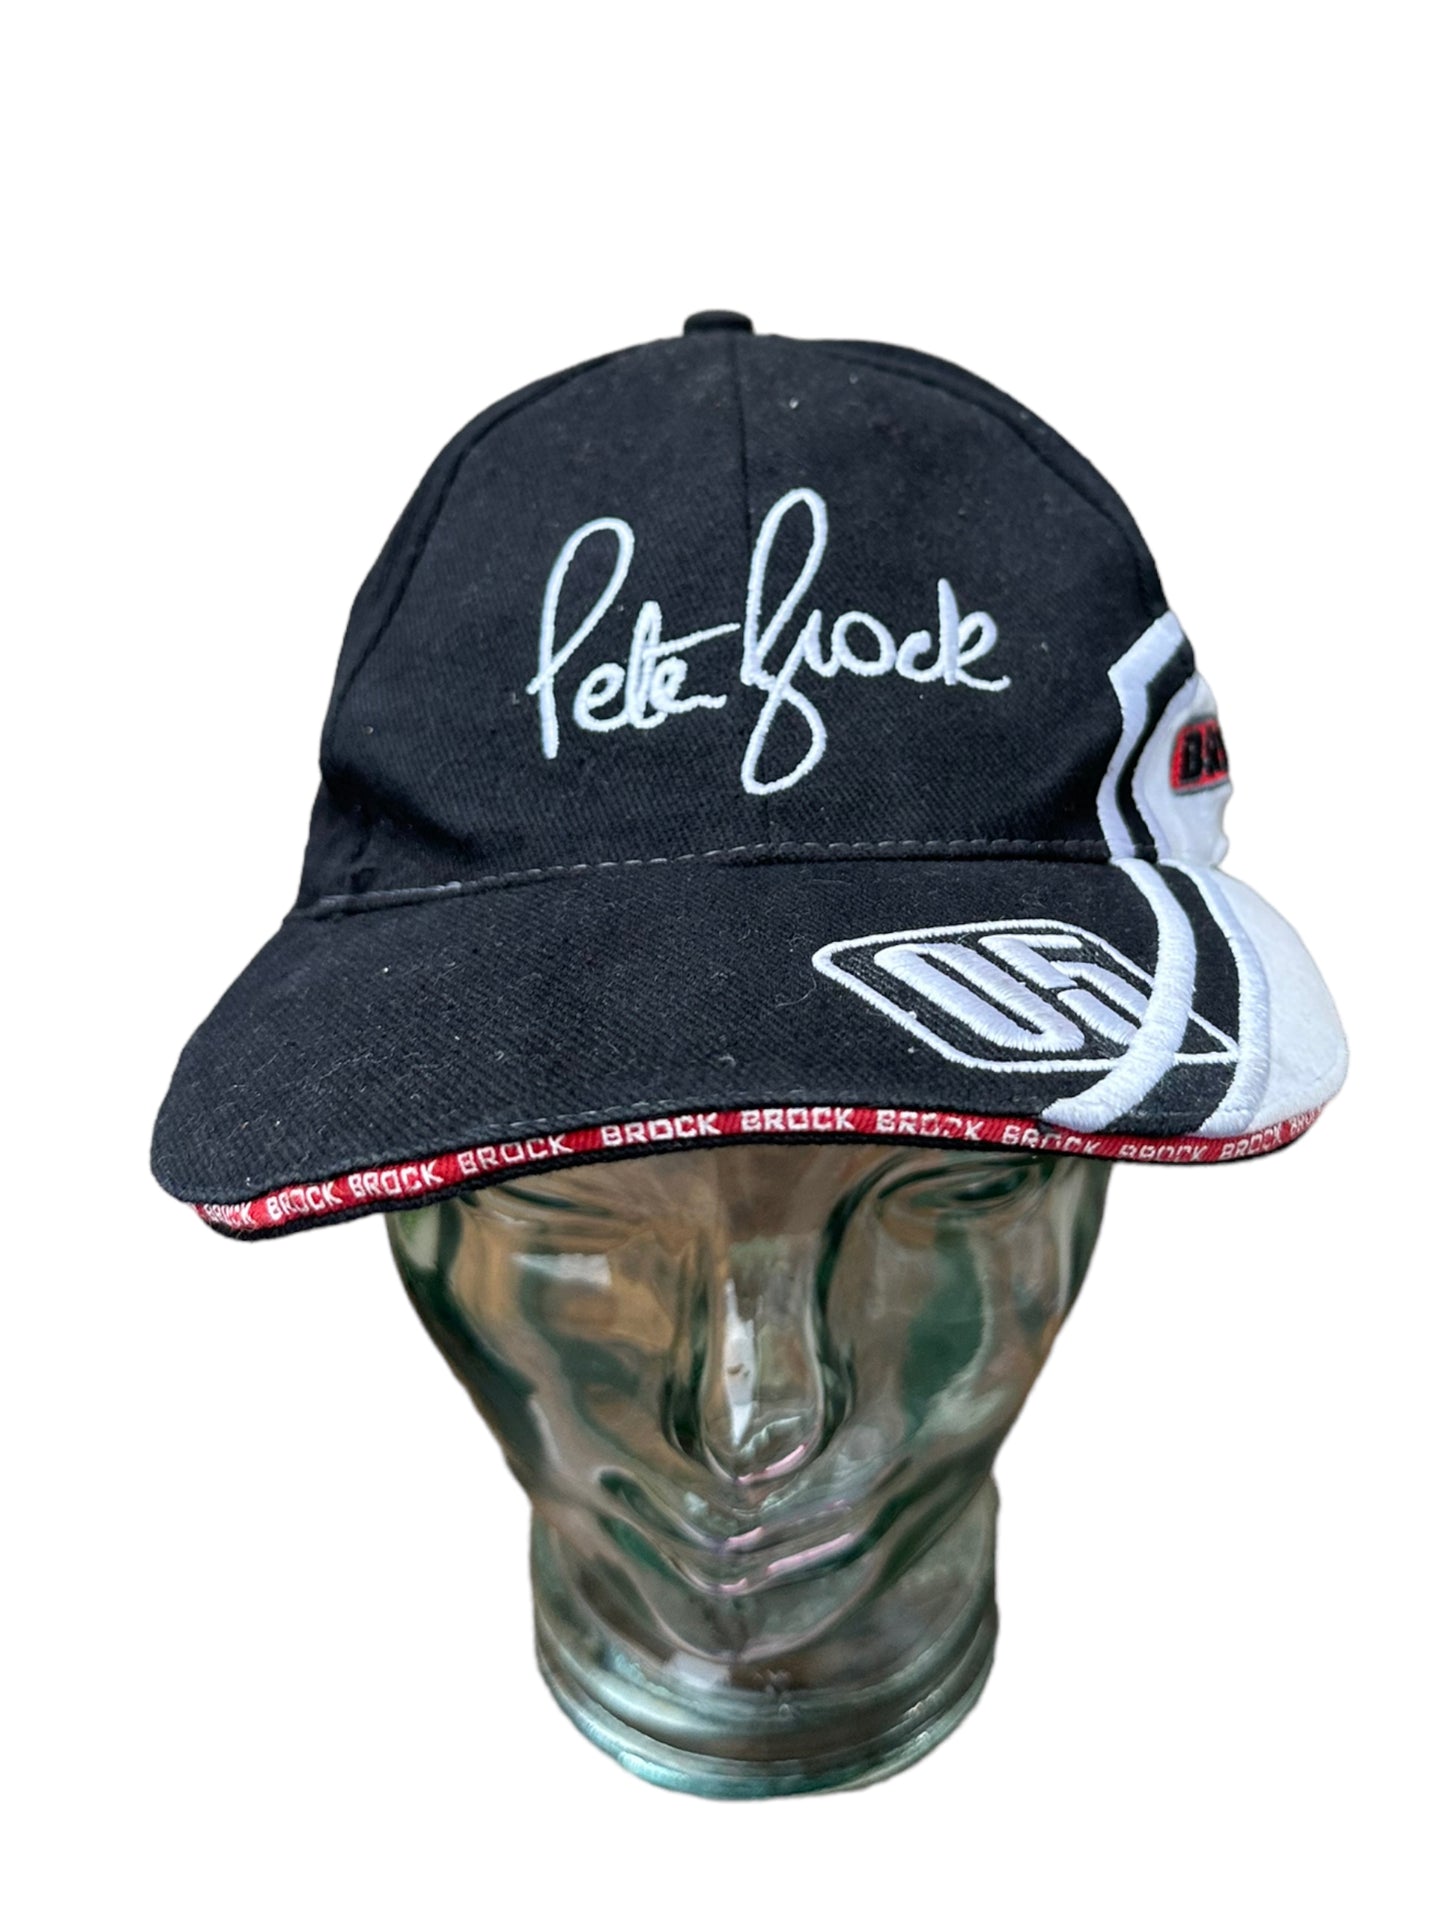 PETER BROCK 2005 HAT